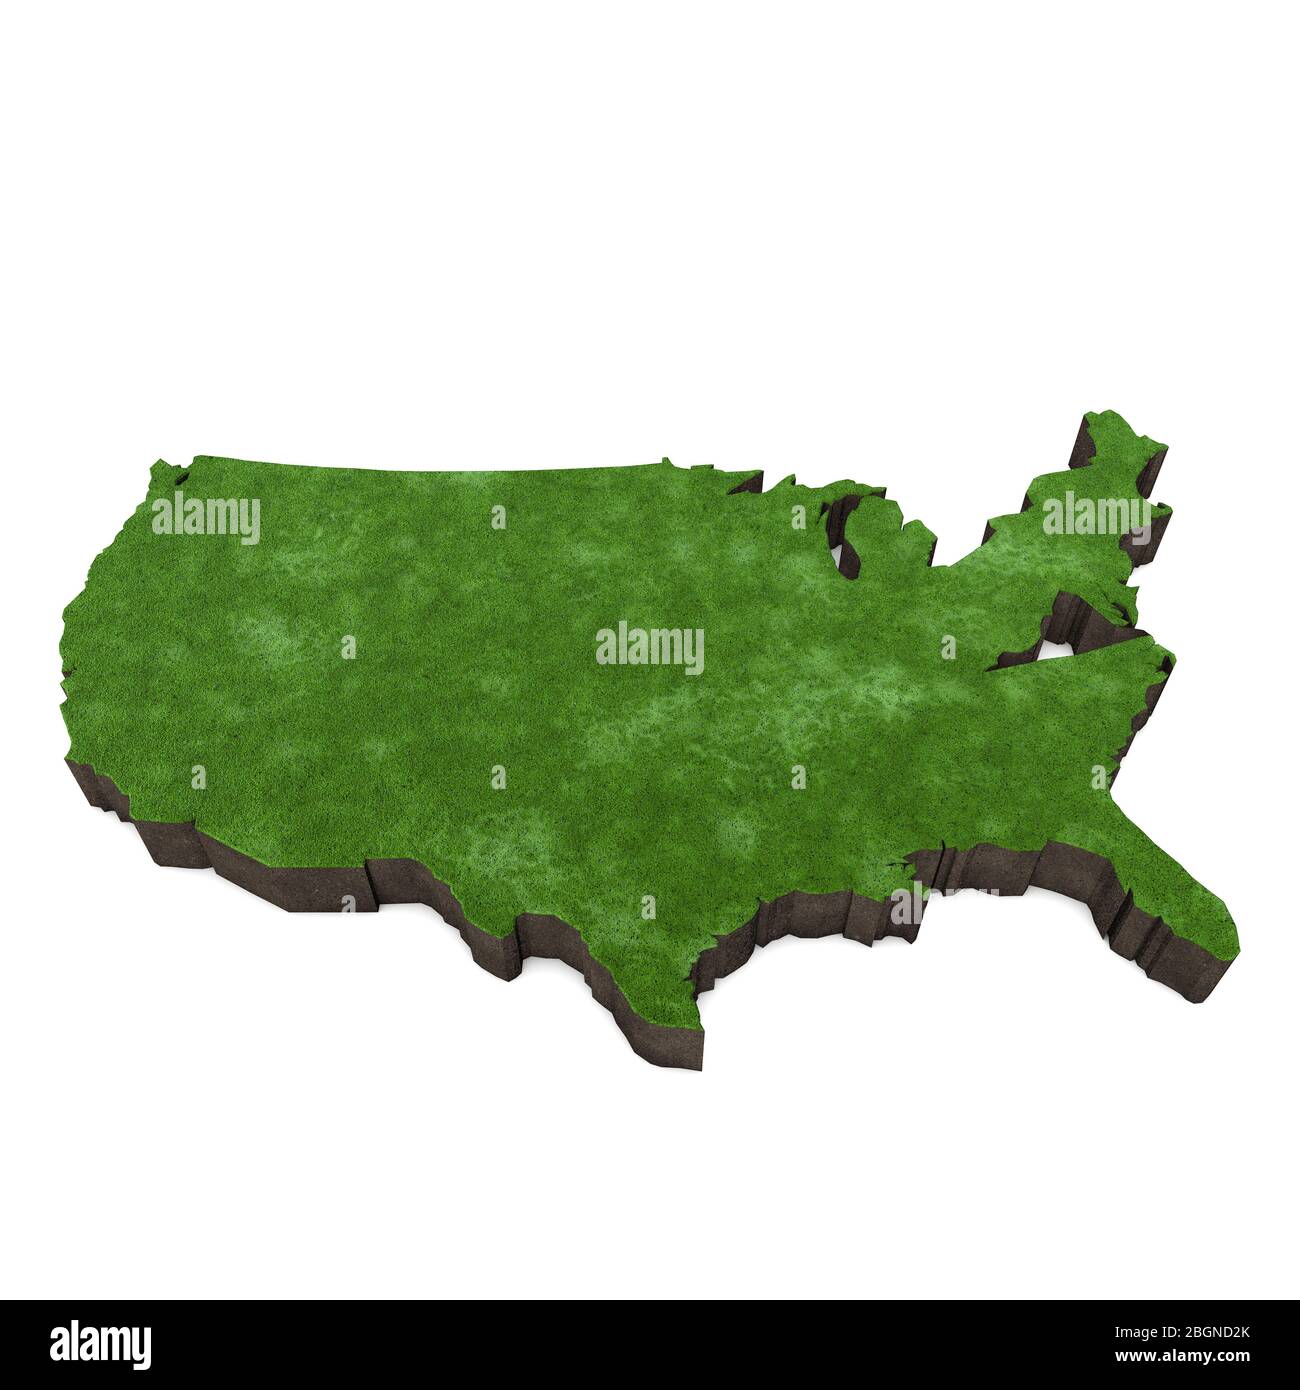 Karte Der Vereinigten Staaten Von Amerika Mit Gras Und Erde 3d Rendering Stockfotografie Alamy 2204